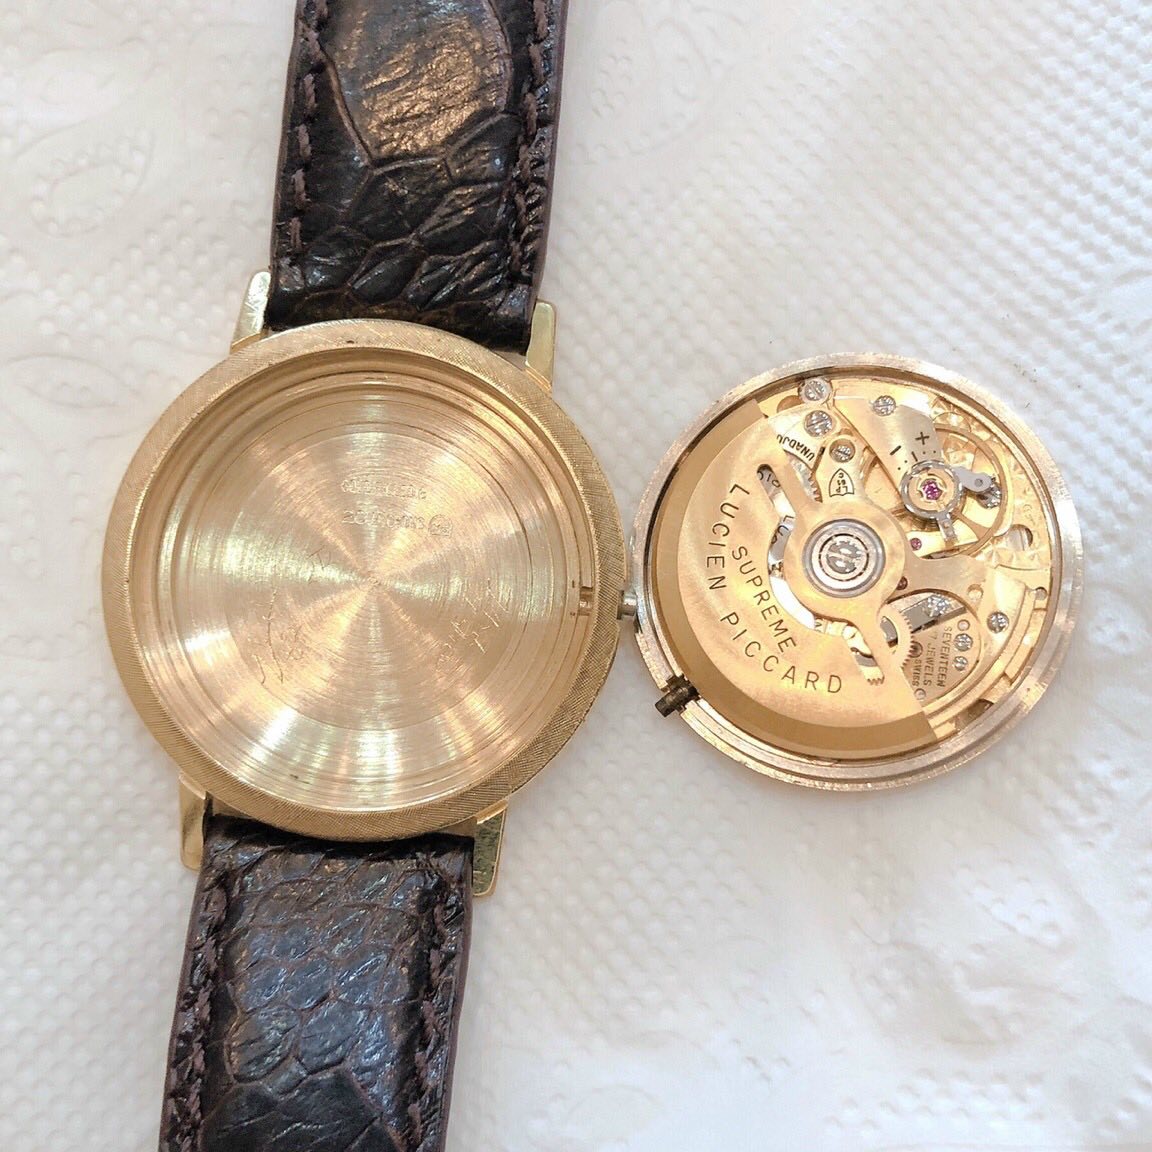 Đồng hồ cổ Lucien Piccard automatic Siêu mỏng - lịch lộc chính hãng Thuỵ Sĩ